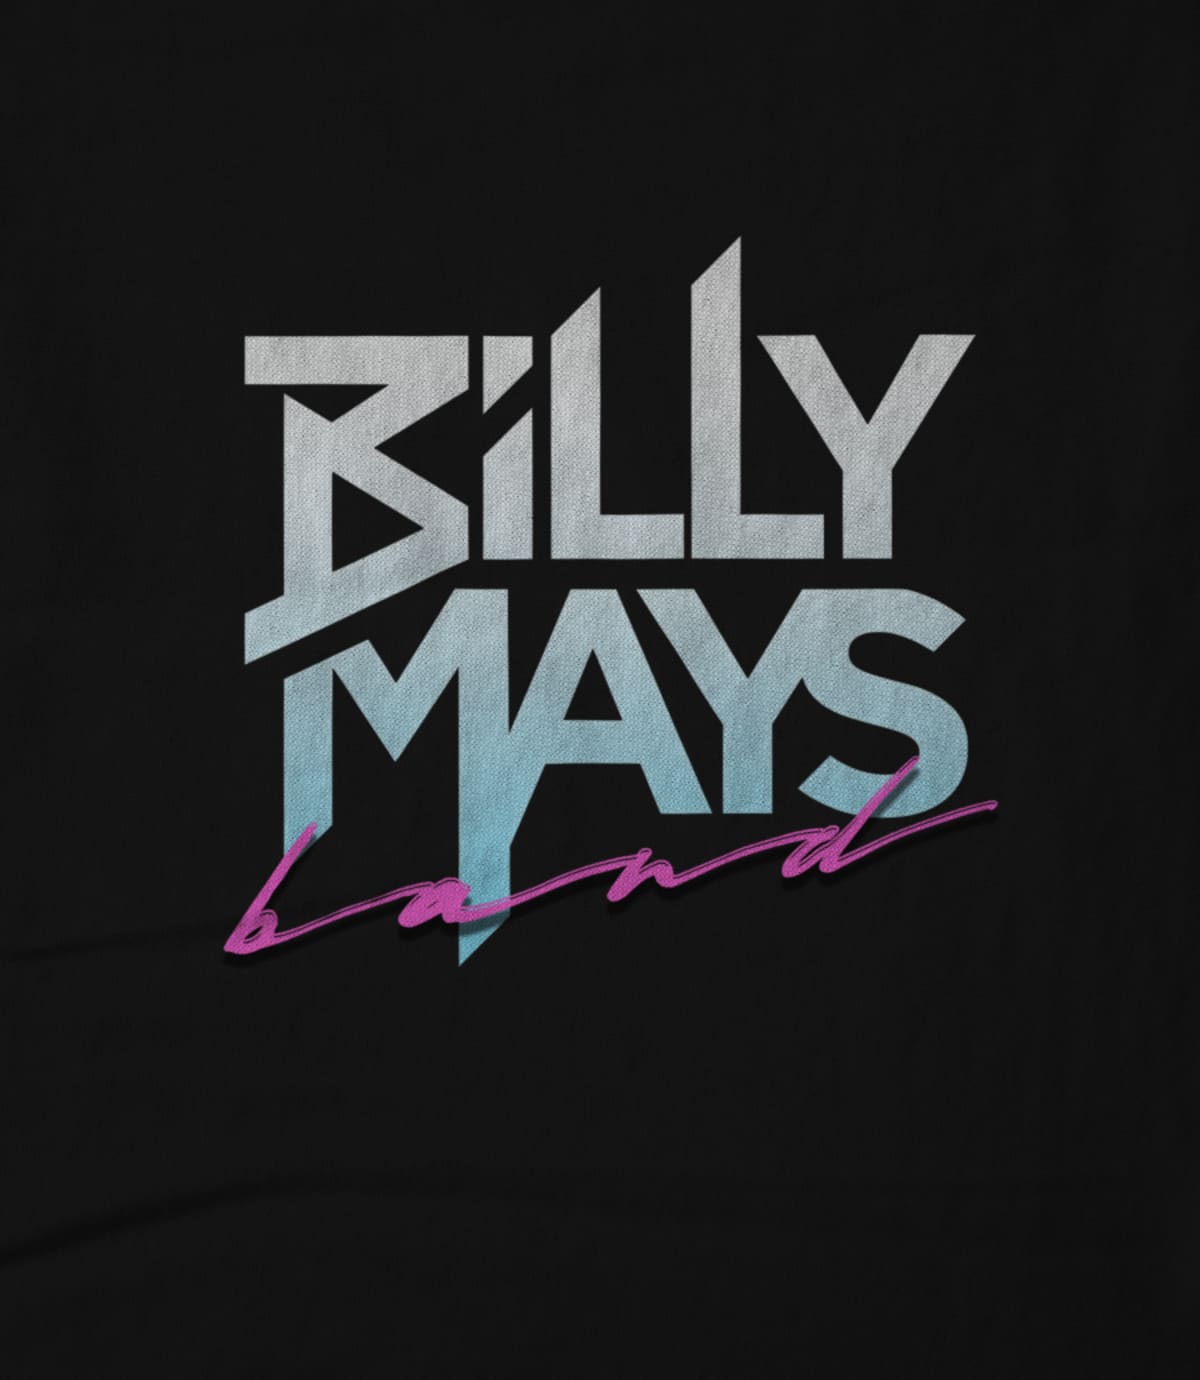 Billy mays band bmb logo 02 1568833428